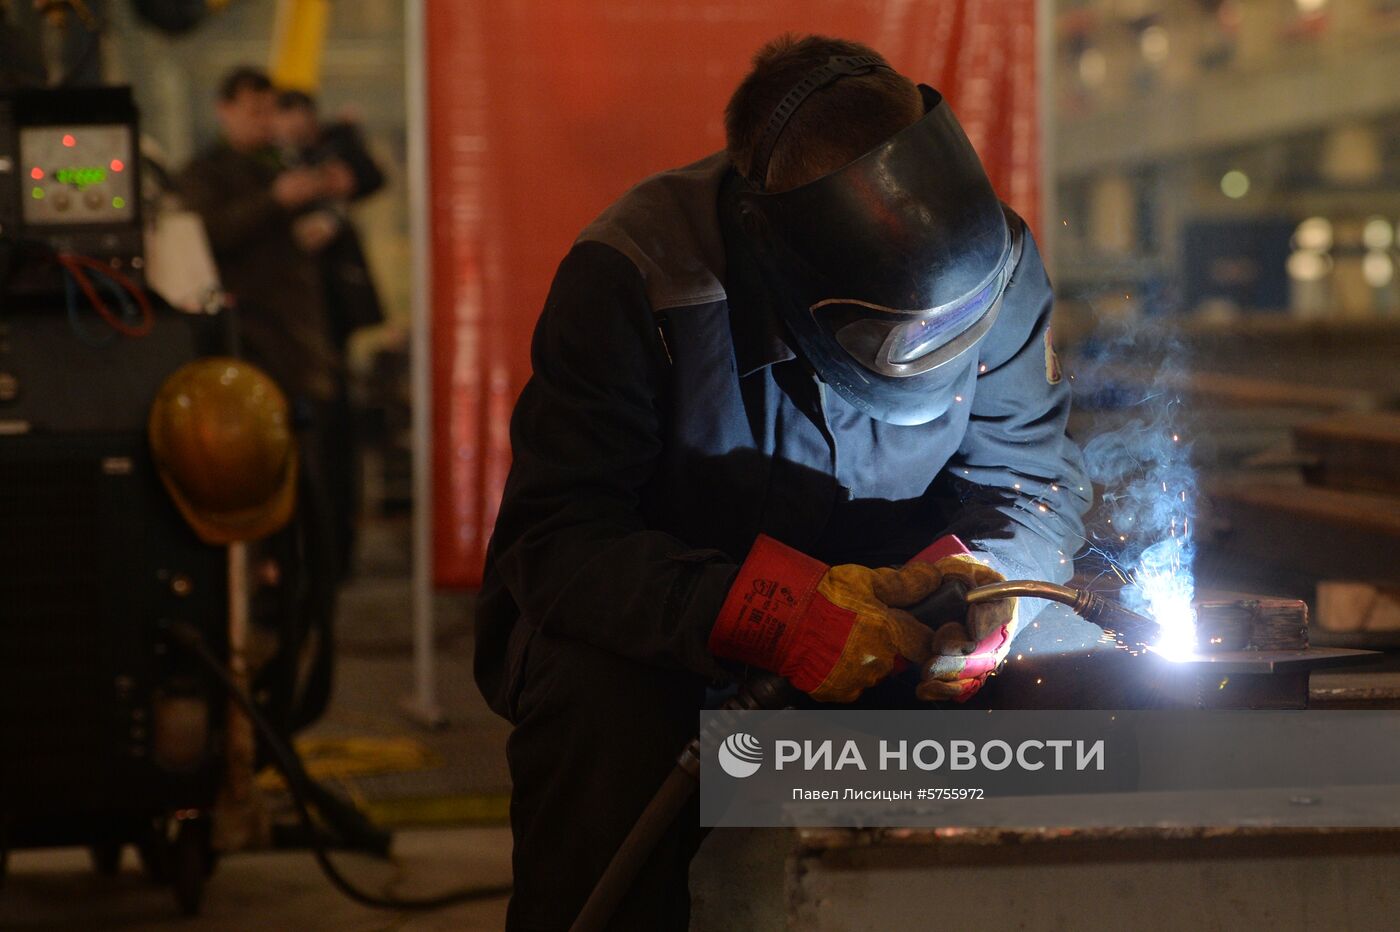 Производство цветных металлов в Свердловской области